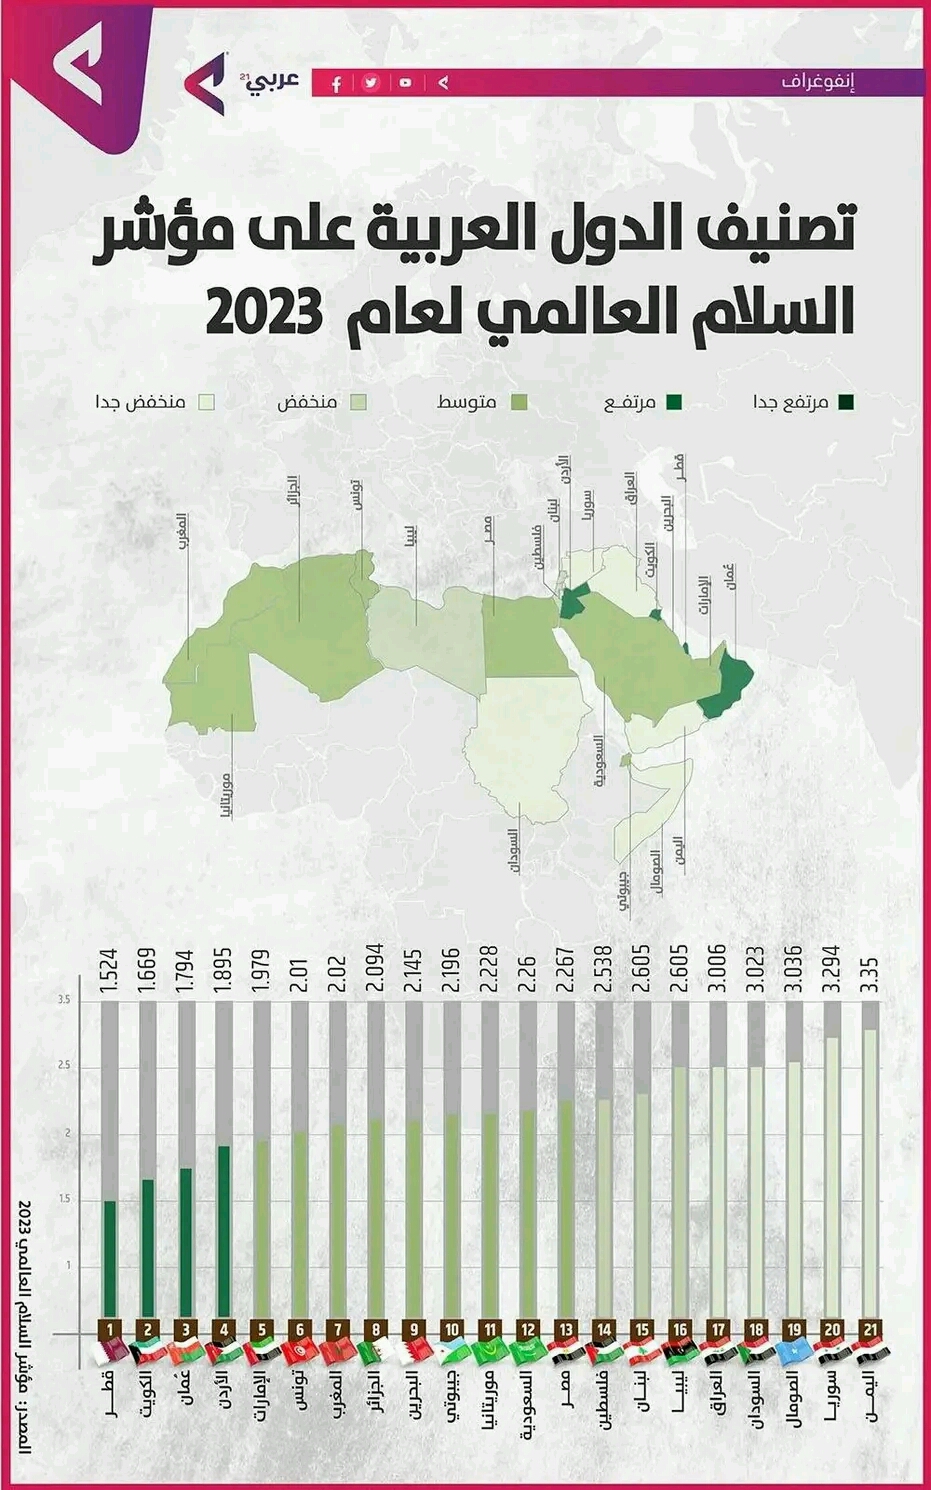 اليمن تتذيل قائمة الدول العربية في مؤشر السلام العالمي لعام 2023